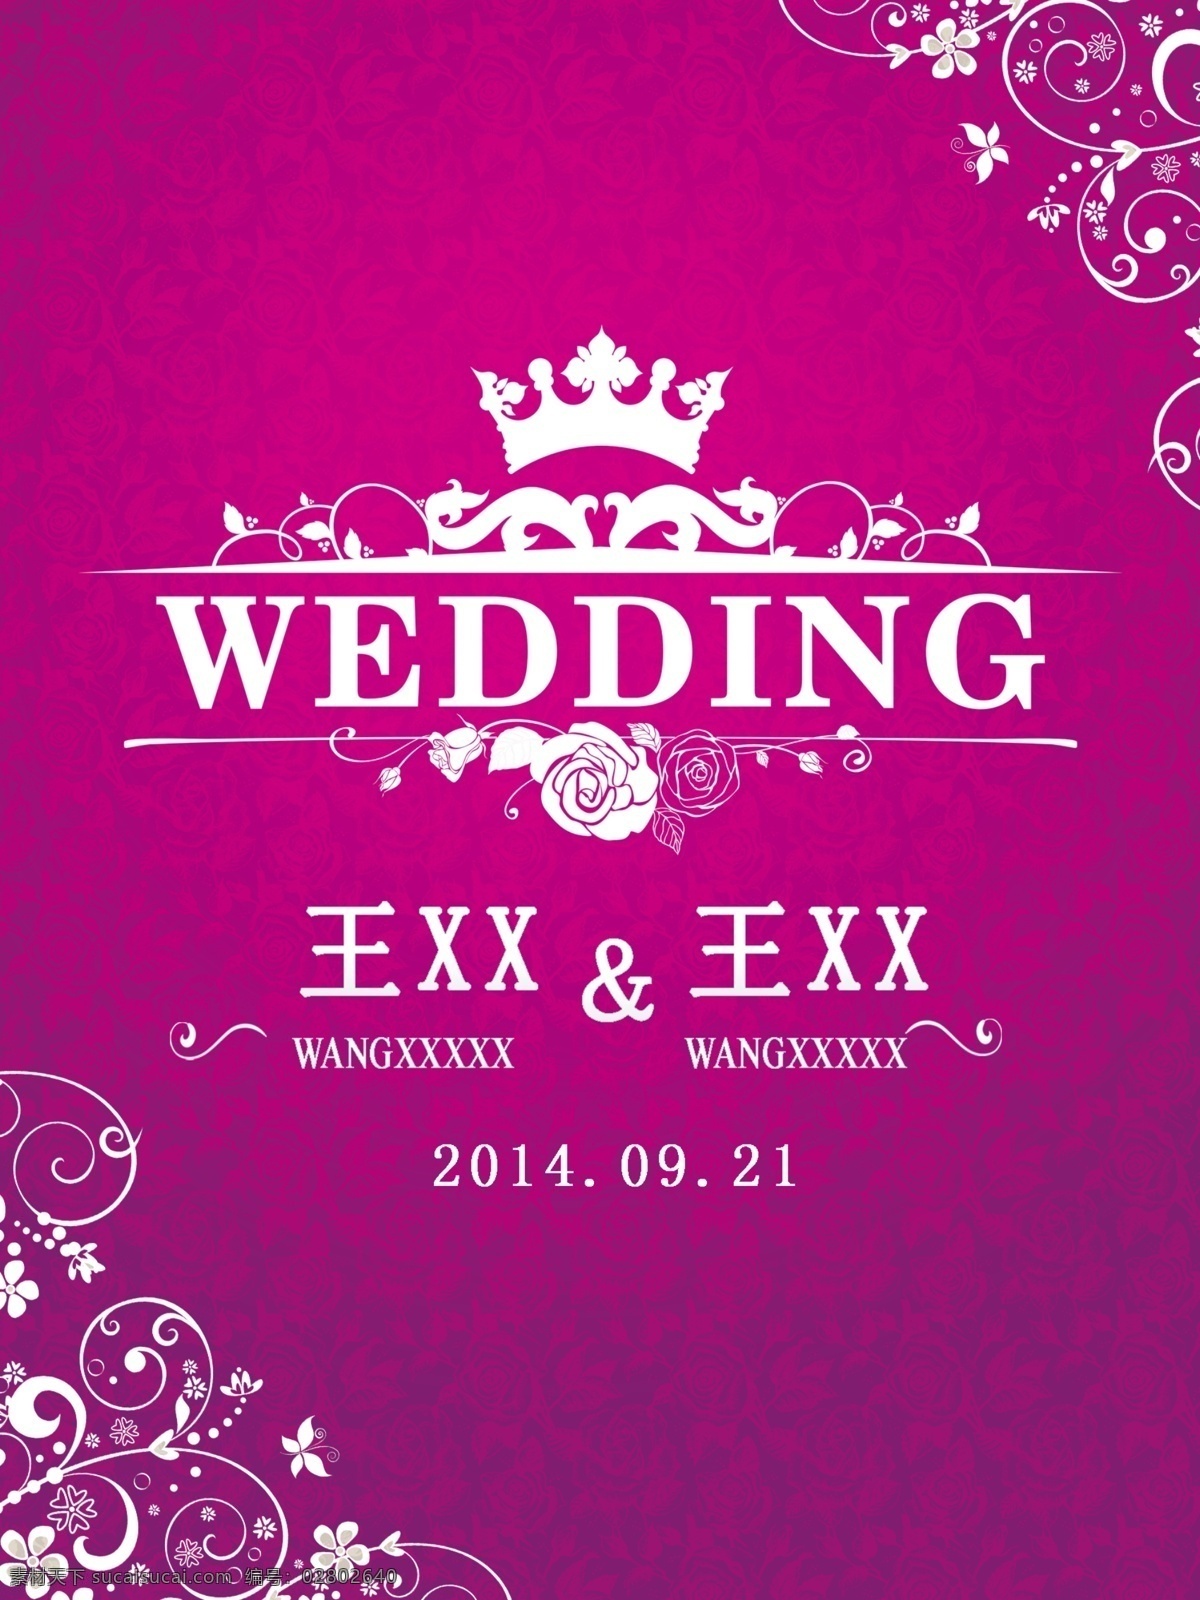 主题logo 紫色 主题婚礼 底纹 玫瑰花 分层